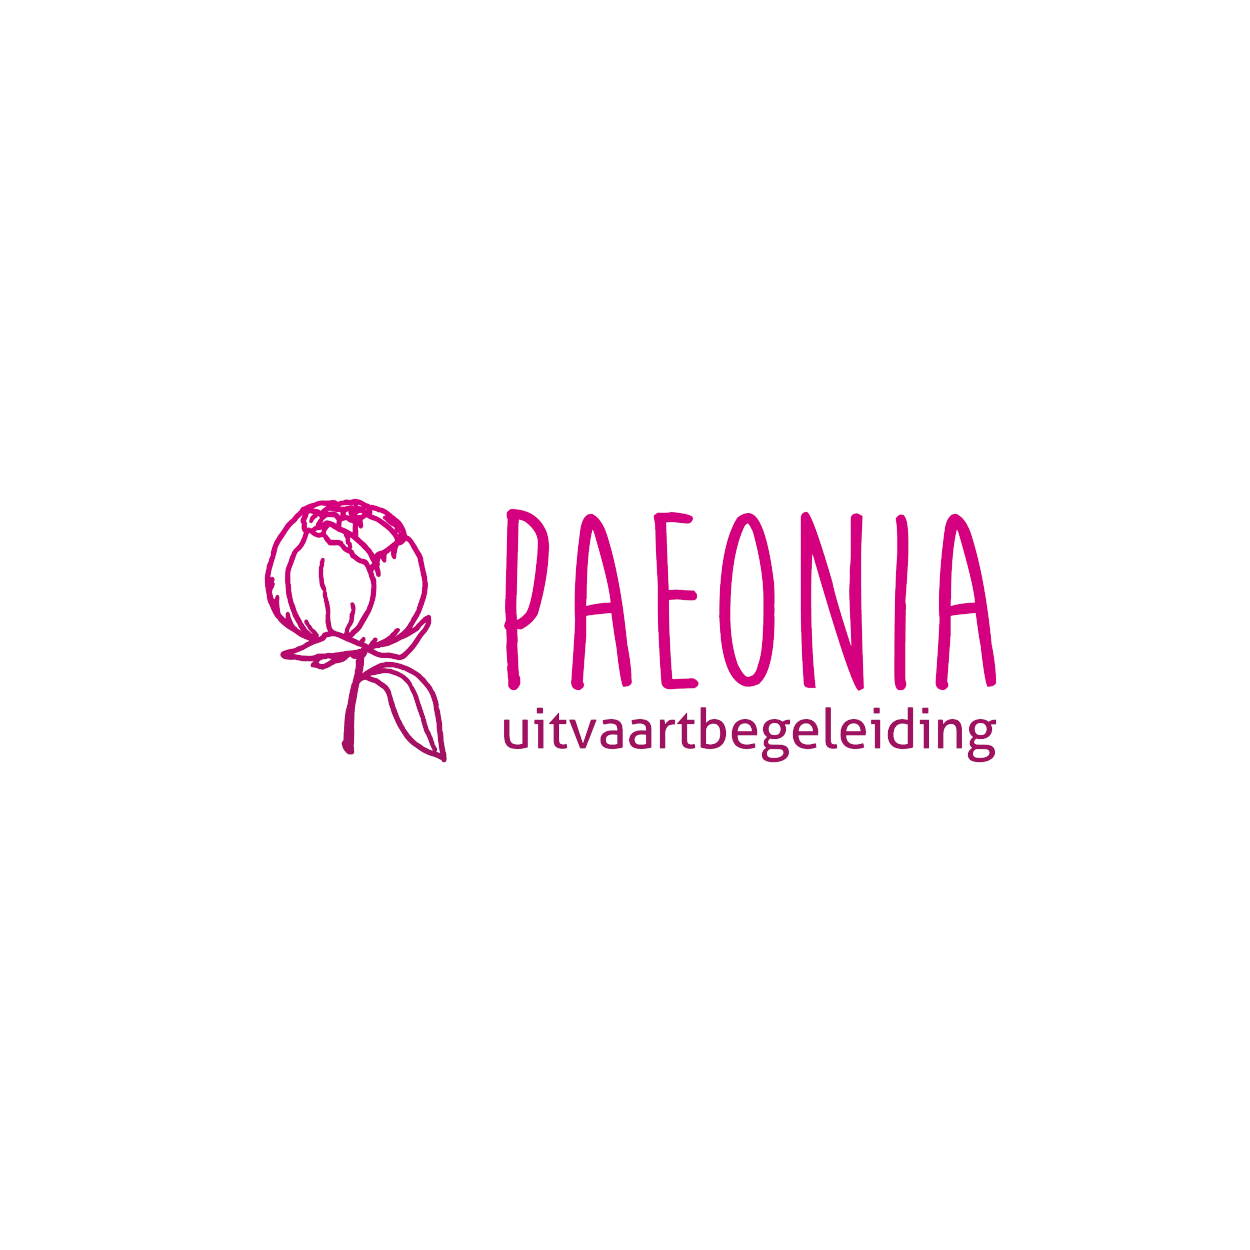 s-Paeonia - logo FC 01